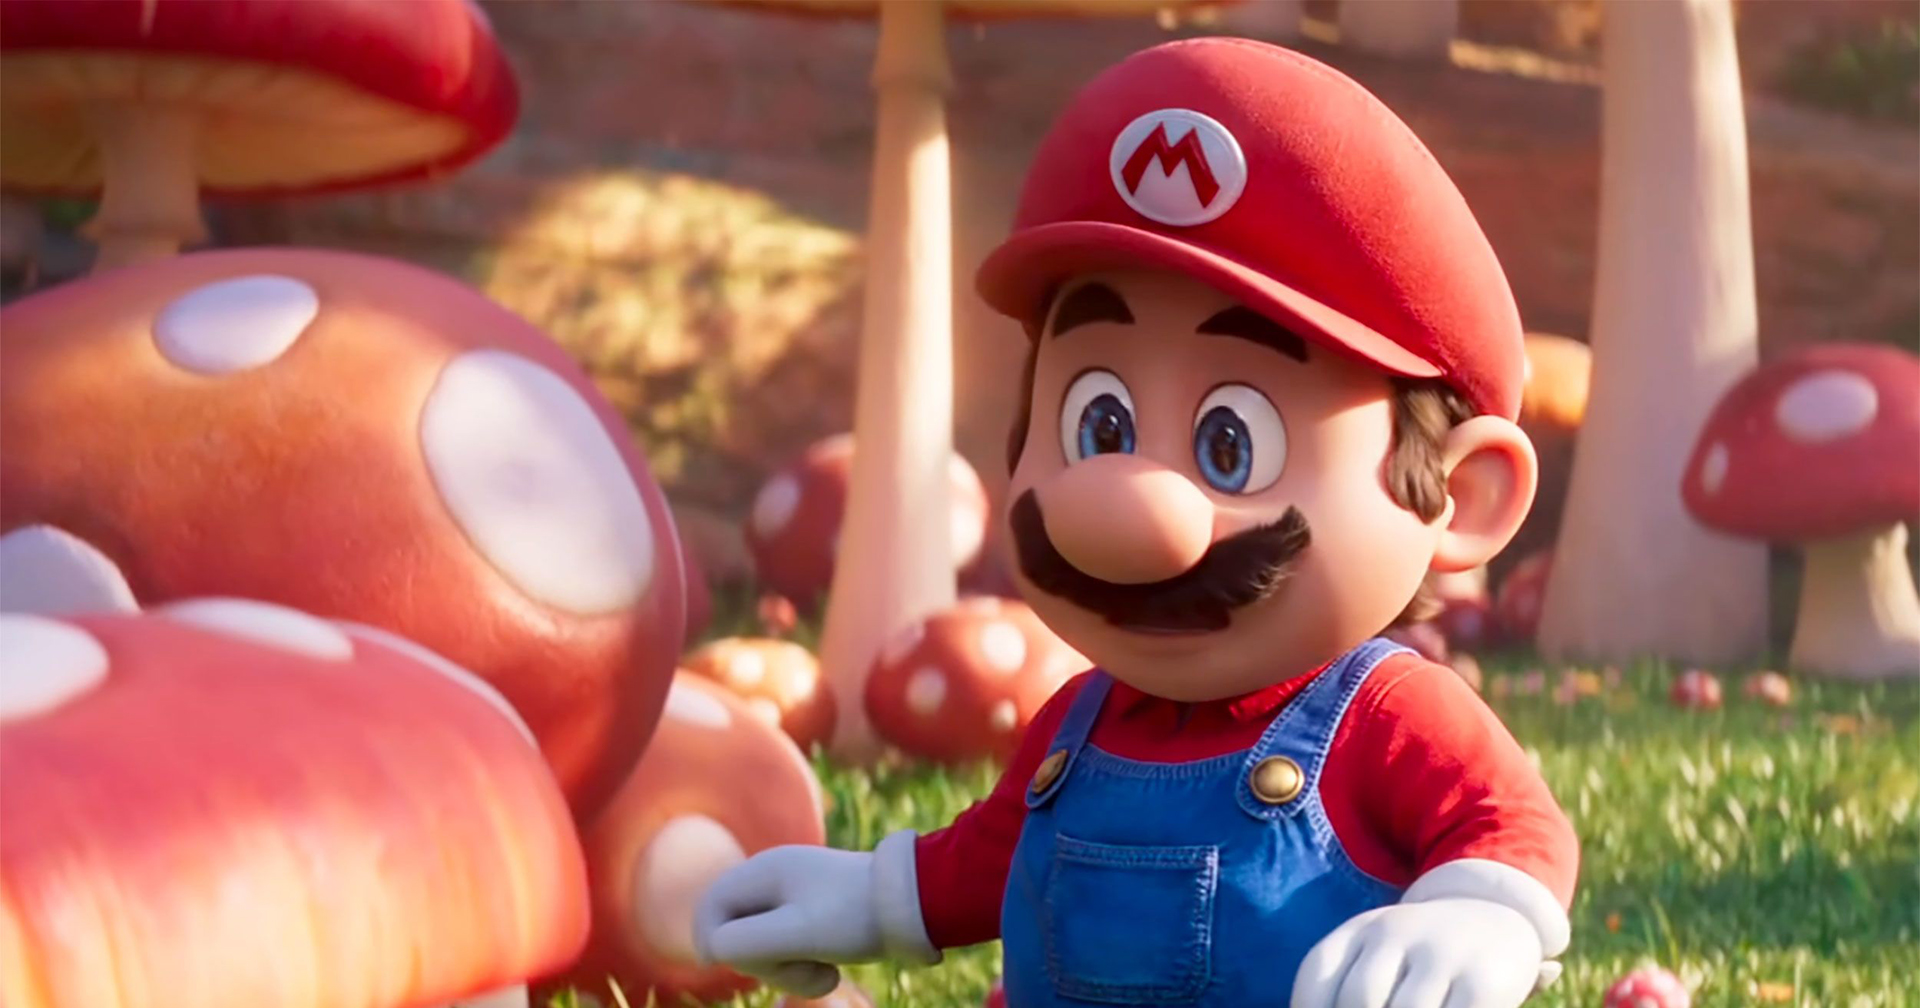 ‘The Super Mario Bros. Movie’ ทุบสถิติรายได้สัปดาห์ที่ 2 ขึ้นเป็นหนังดัดแปลงจากเกมทำรายได้สูงสุดตลอดกาล